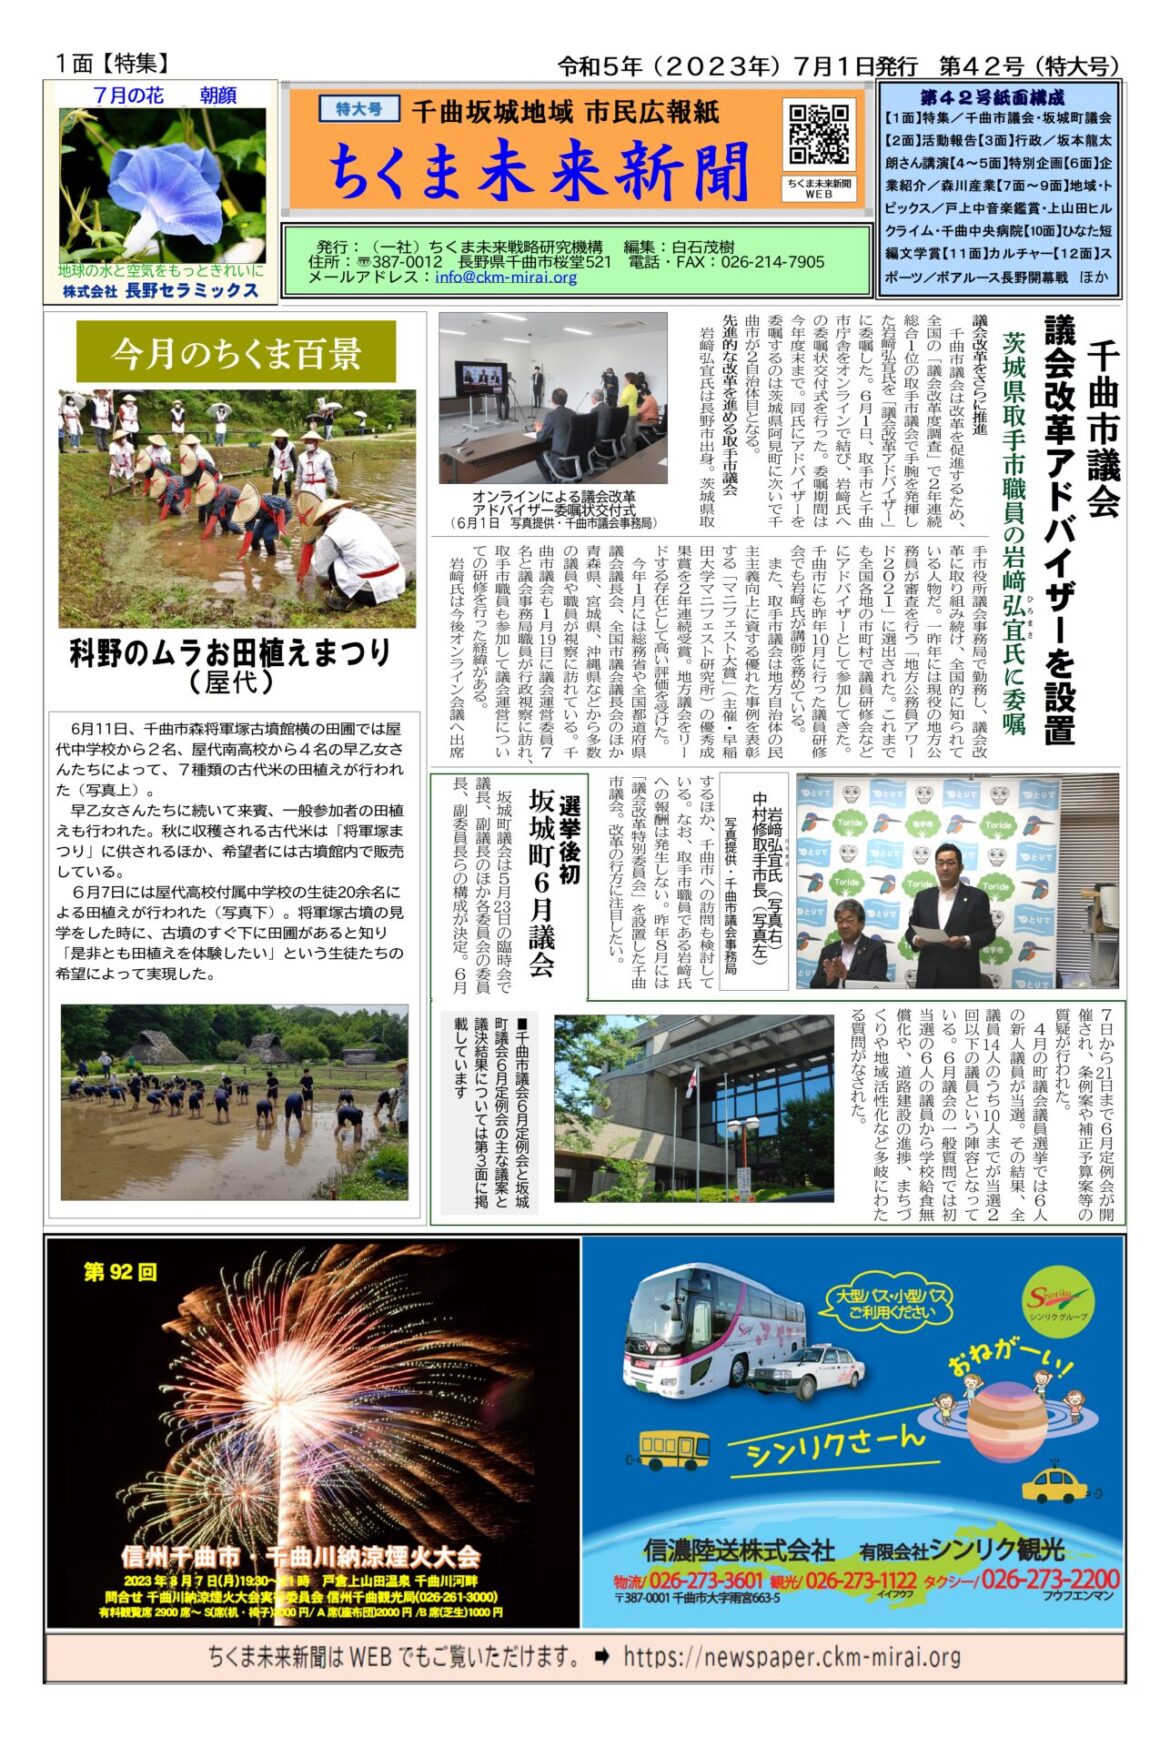 第４２号紙面構成 ちくま未来新聞 千曲坂城地域 市民広報紙